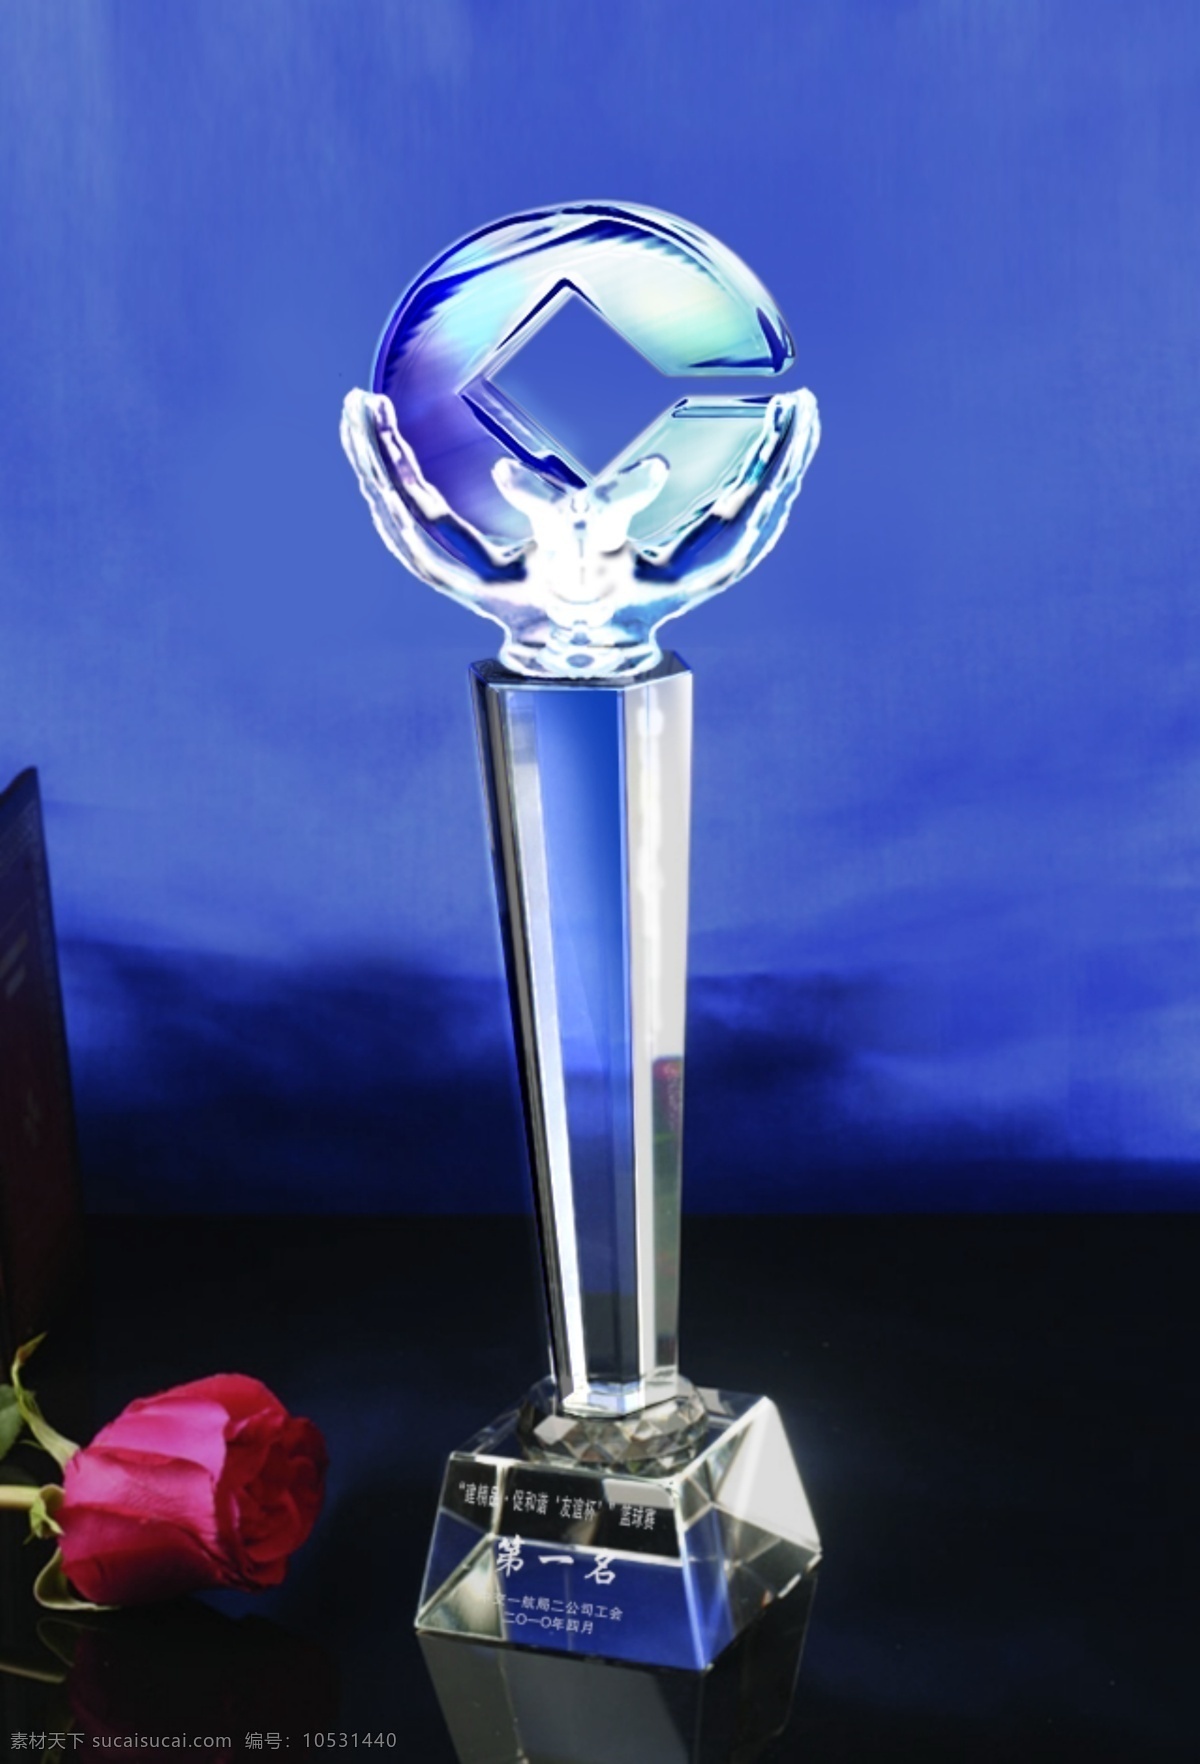 水晶 奖杯 ps 效果图 颁奖 表彰 p图 社会 教育 公共空间